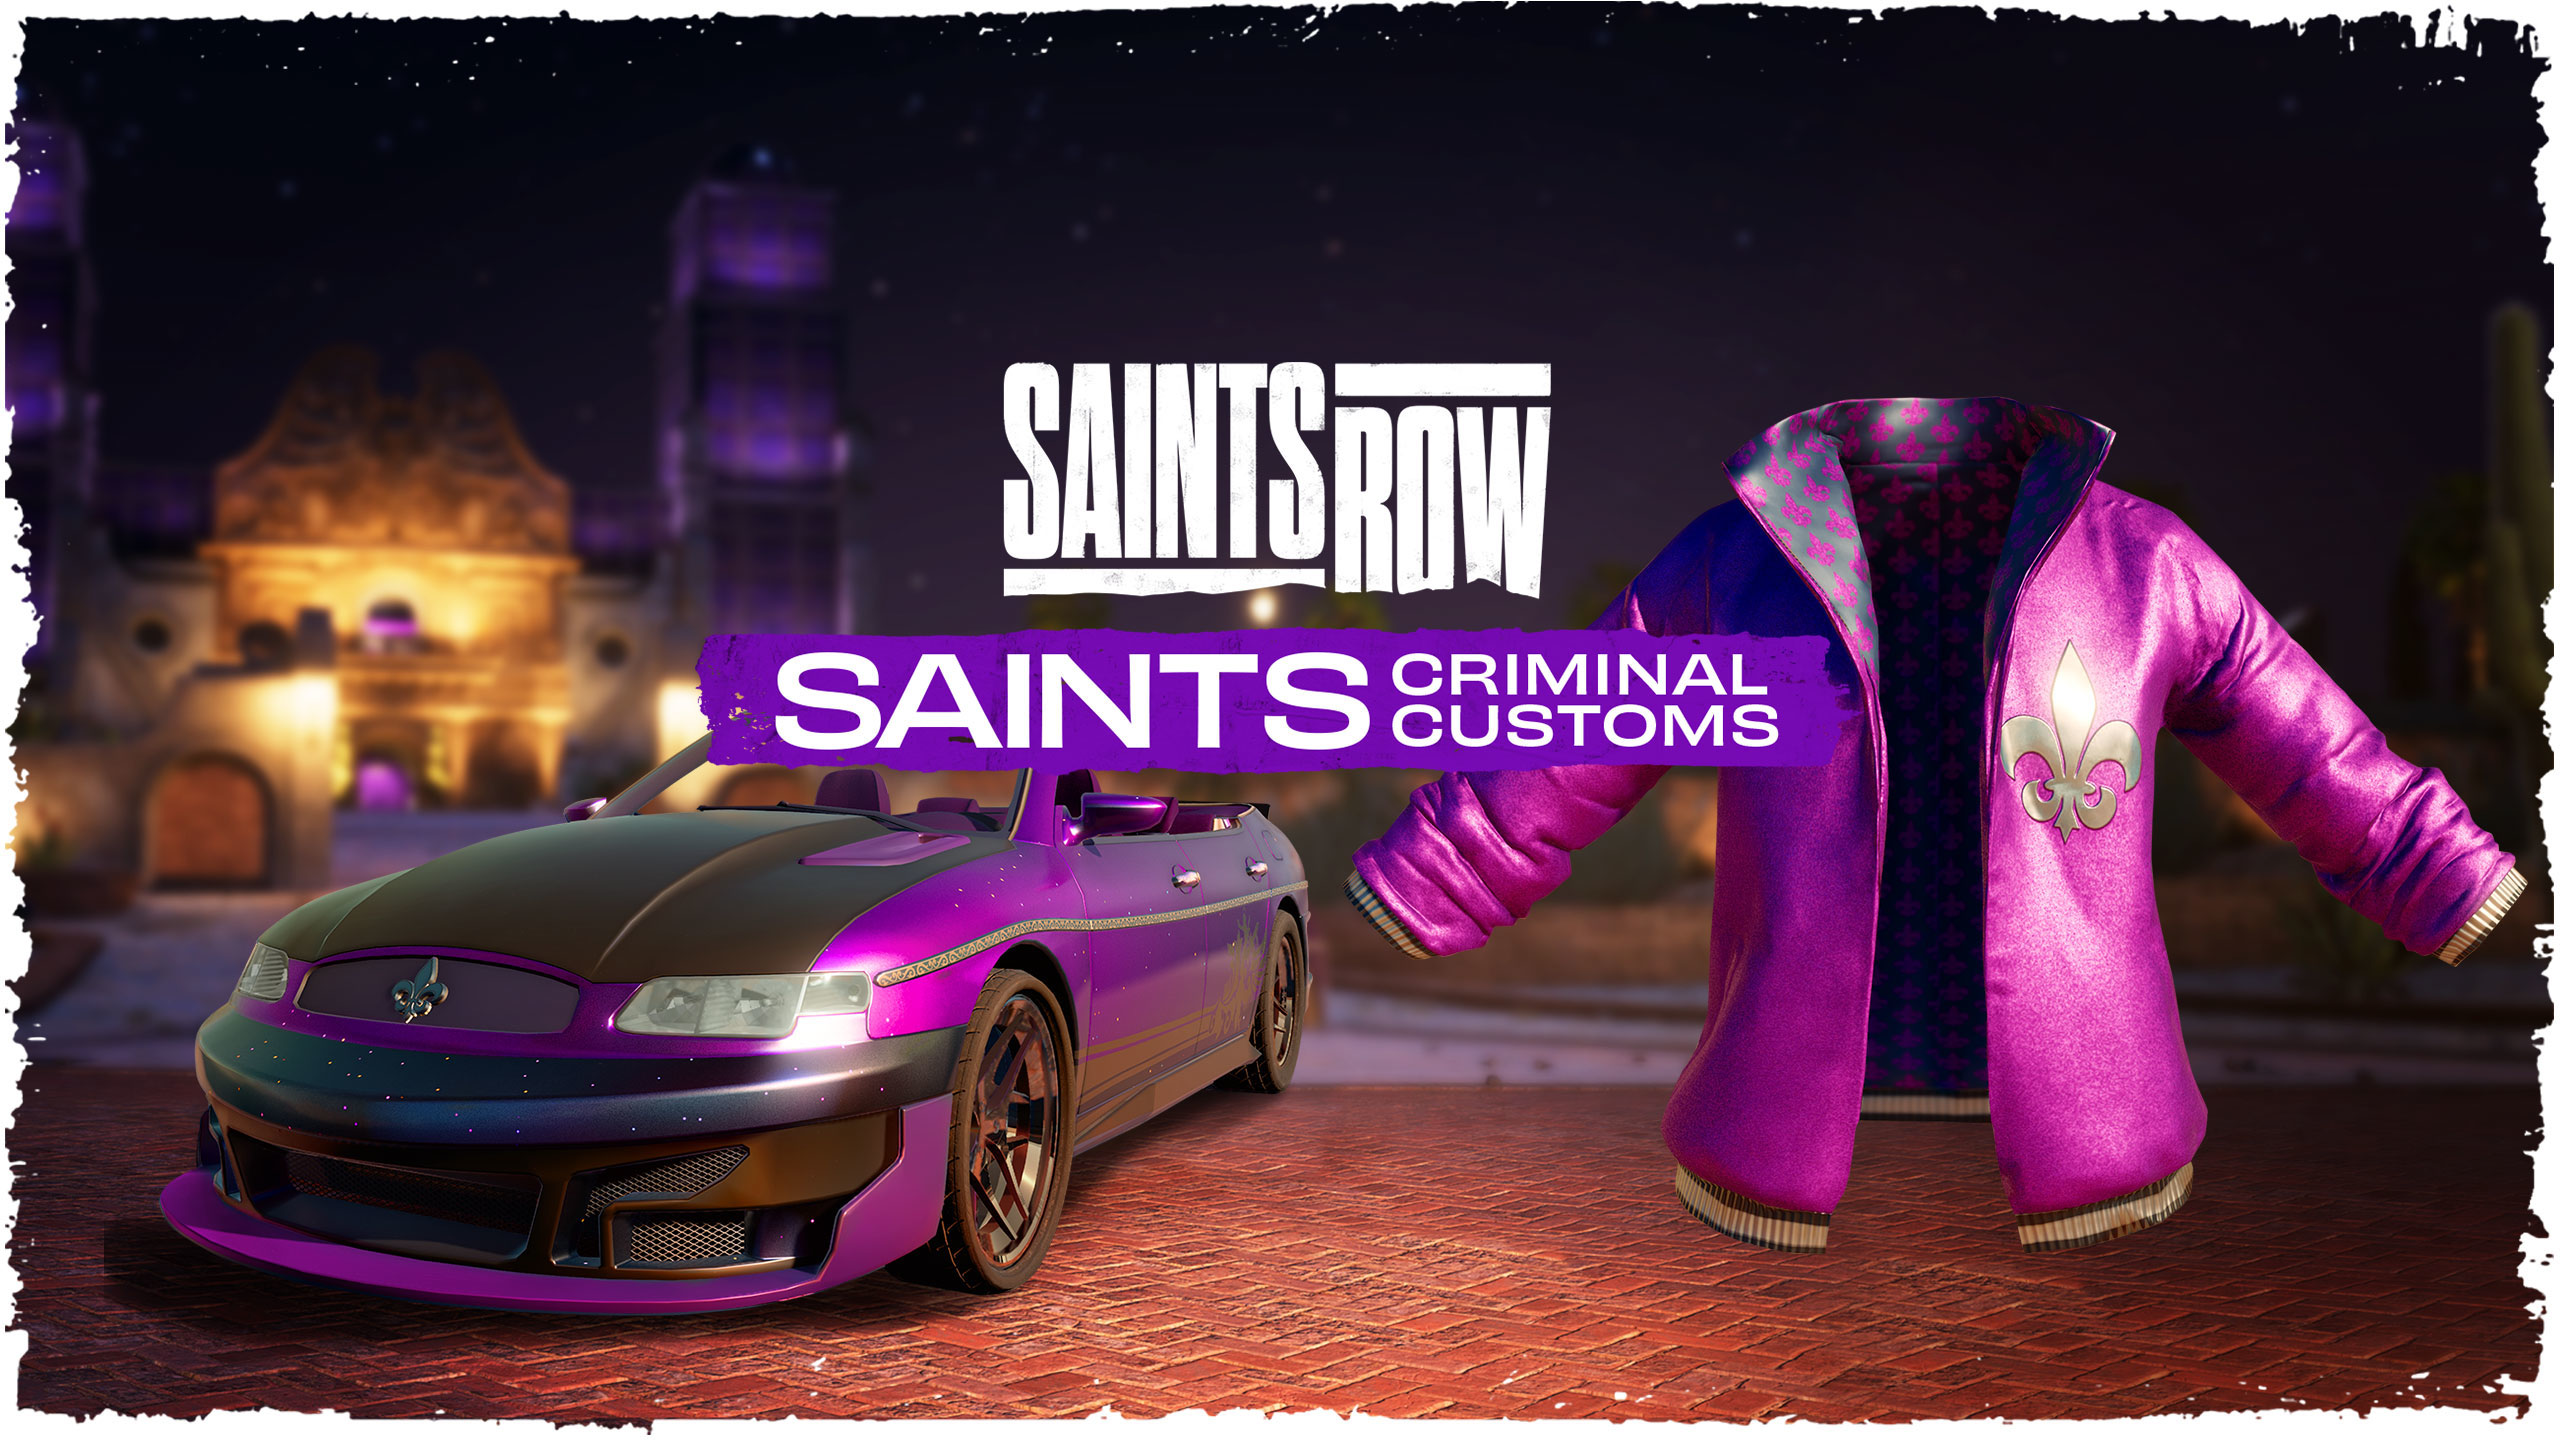 Saints Row Saints Criminal Customs Edition Epic Games CD Key (68.2$)